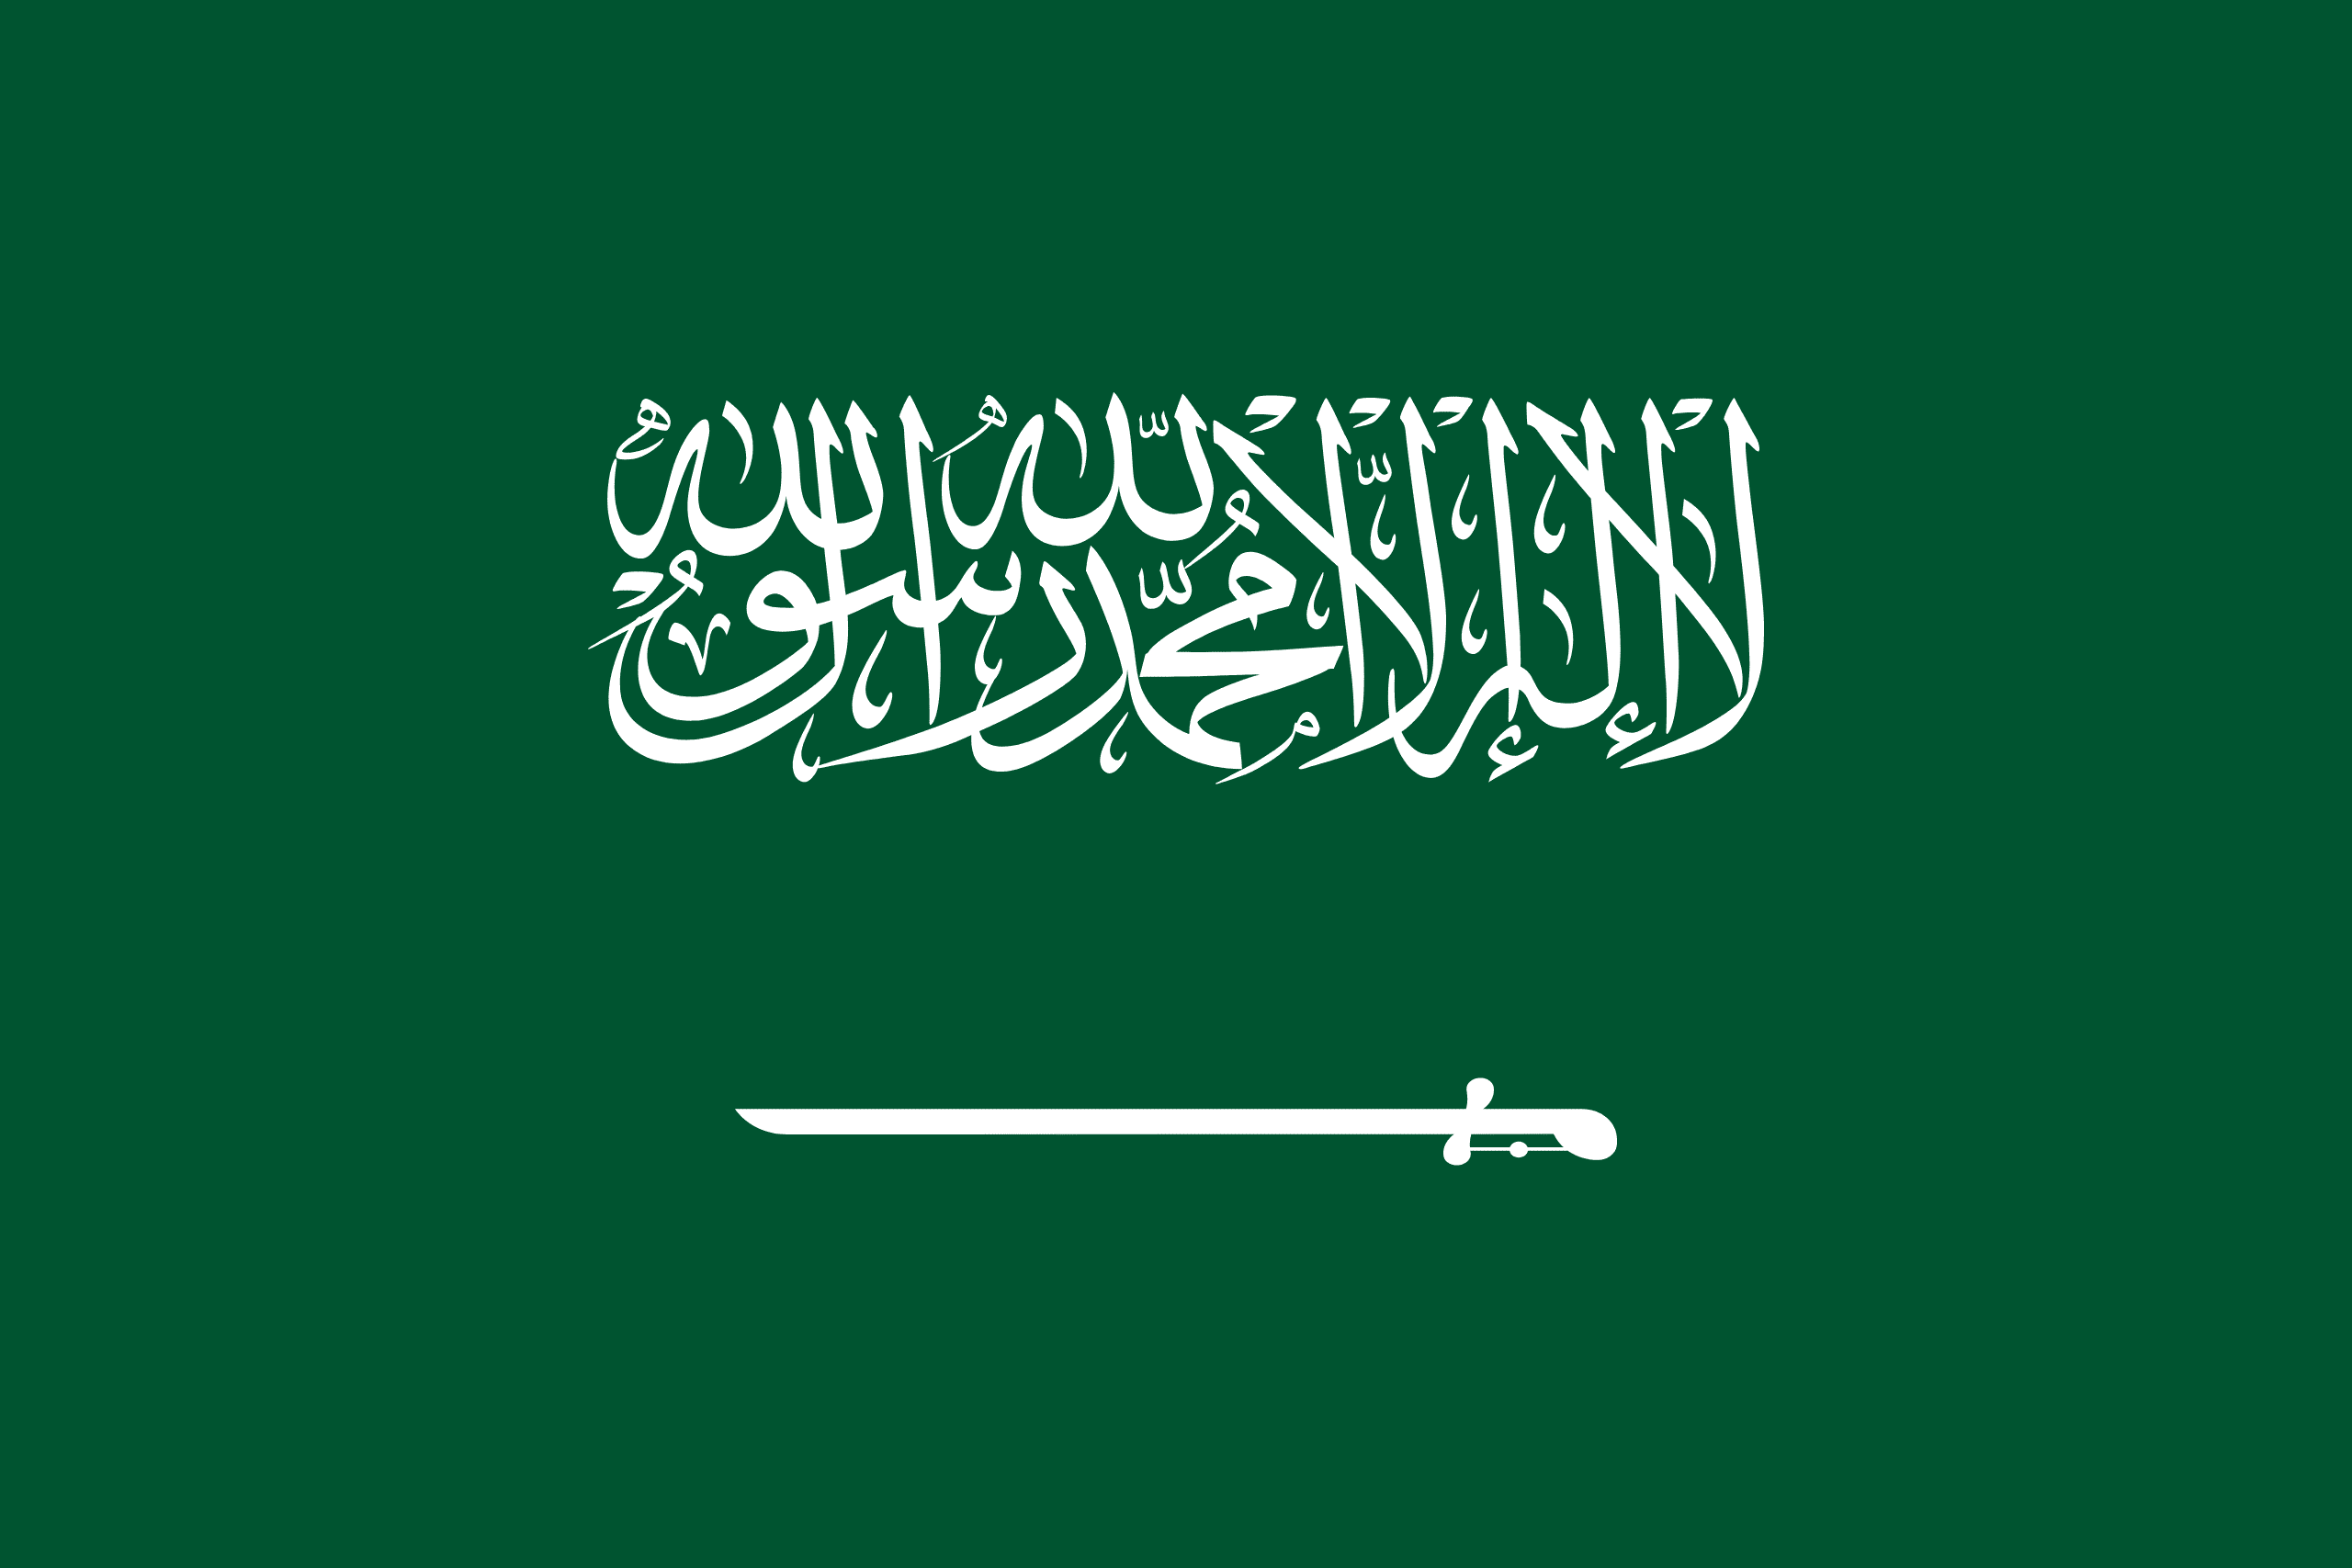 suudi arabistan bayrak ile ilgili görsel sonucu